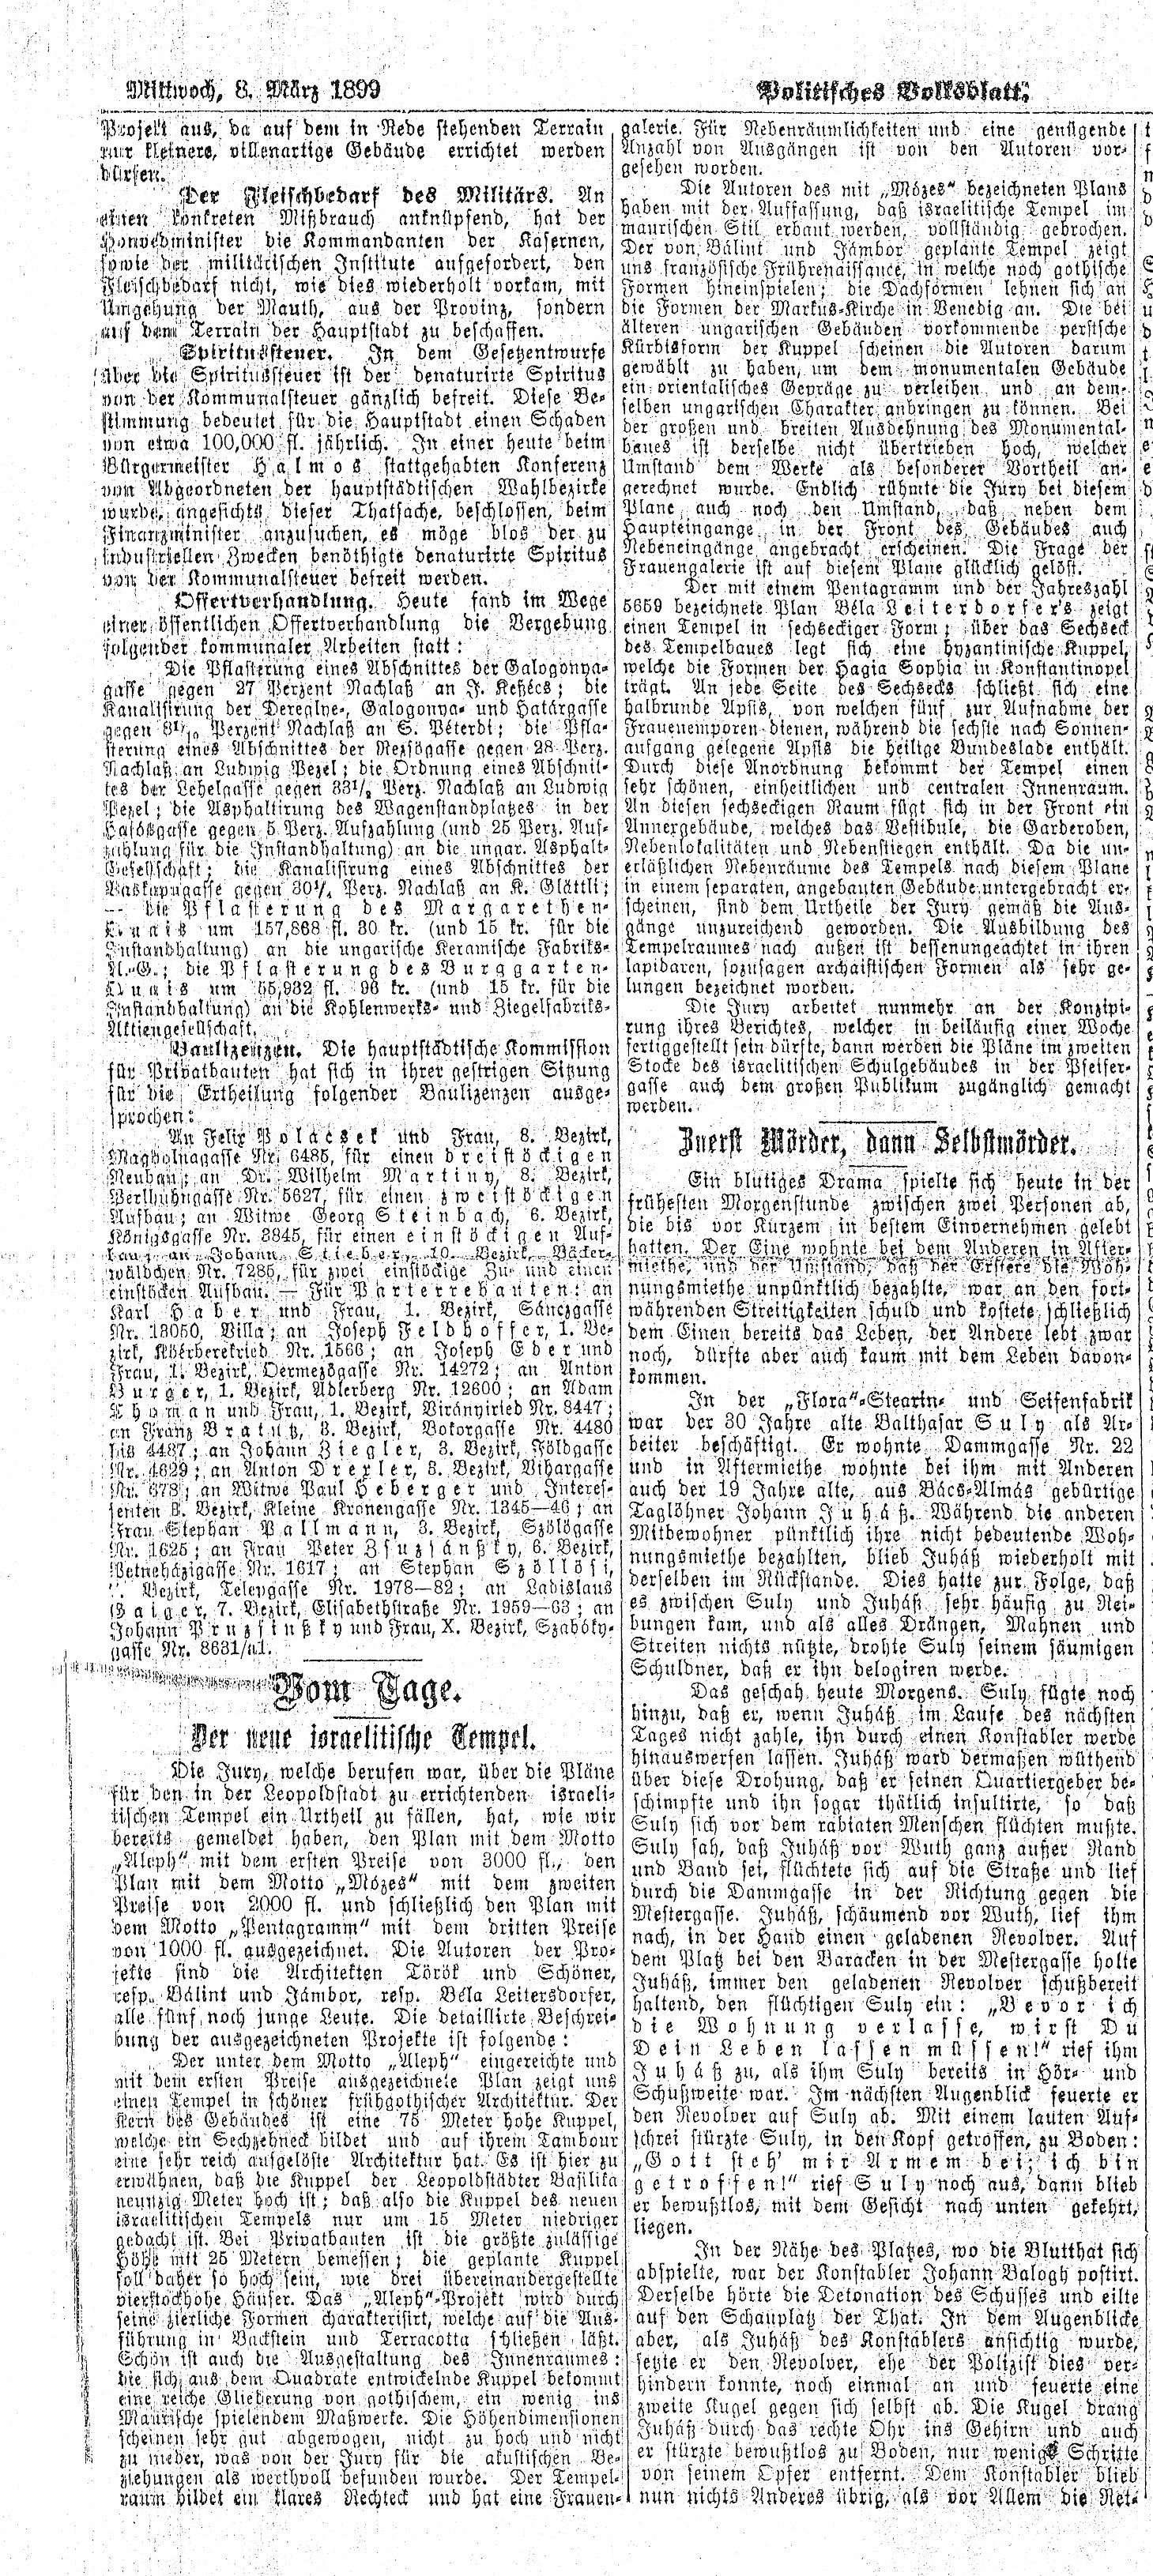 001_Politisches Volksblatt, 1899. III. 8. 4. p.